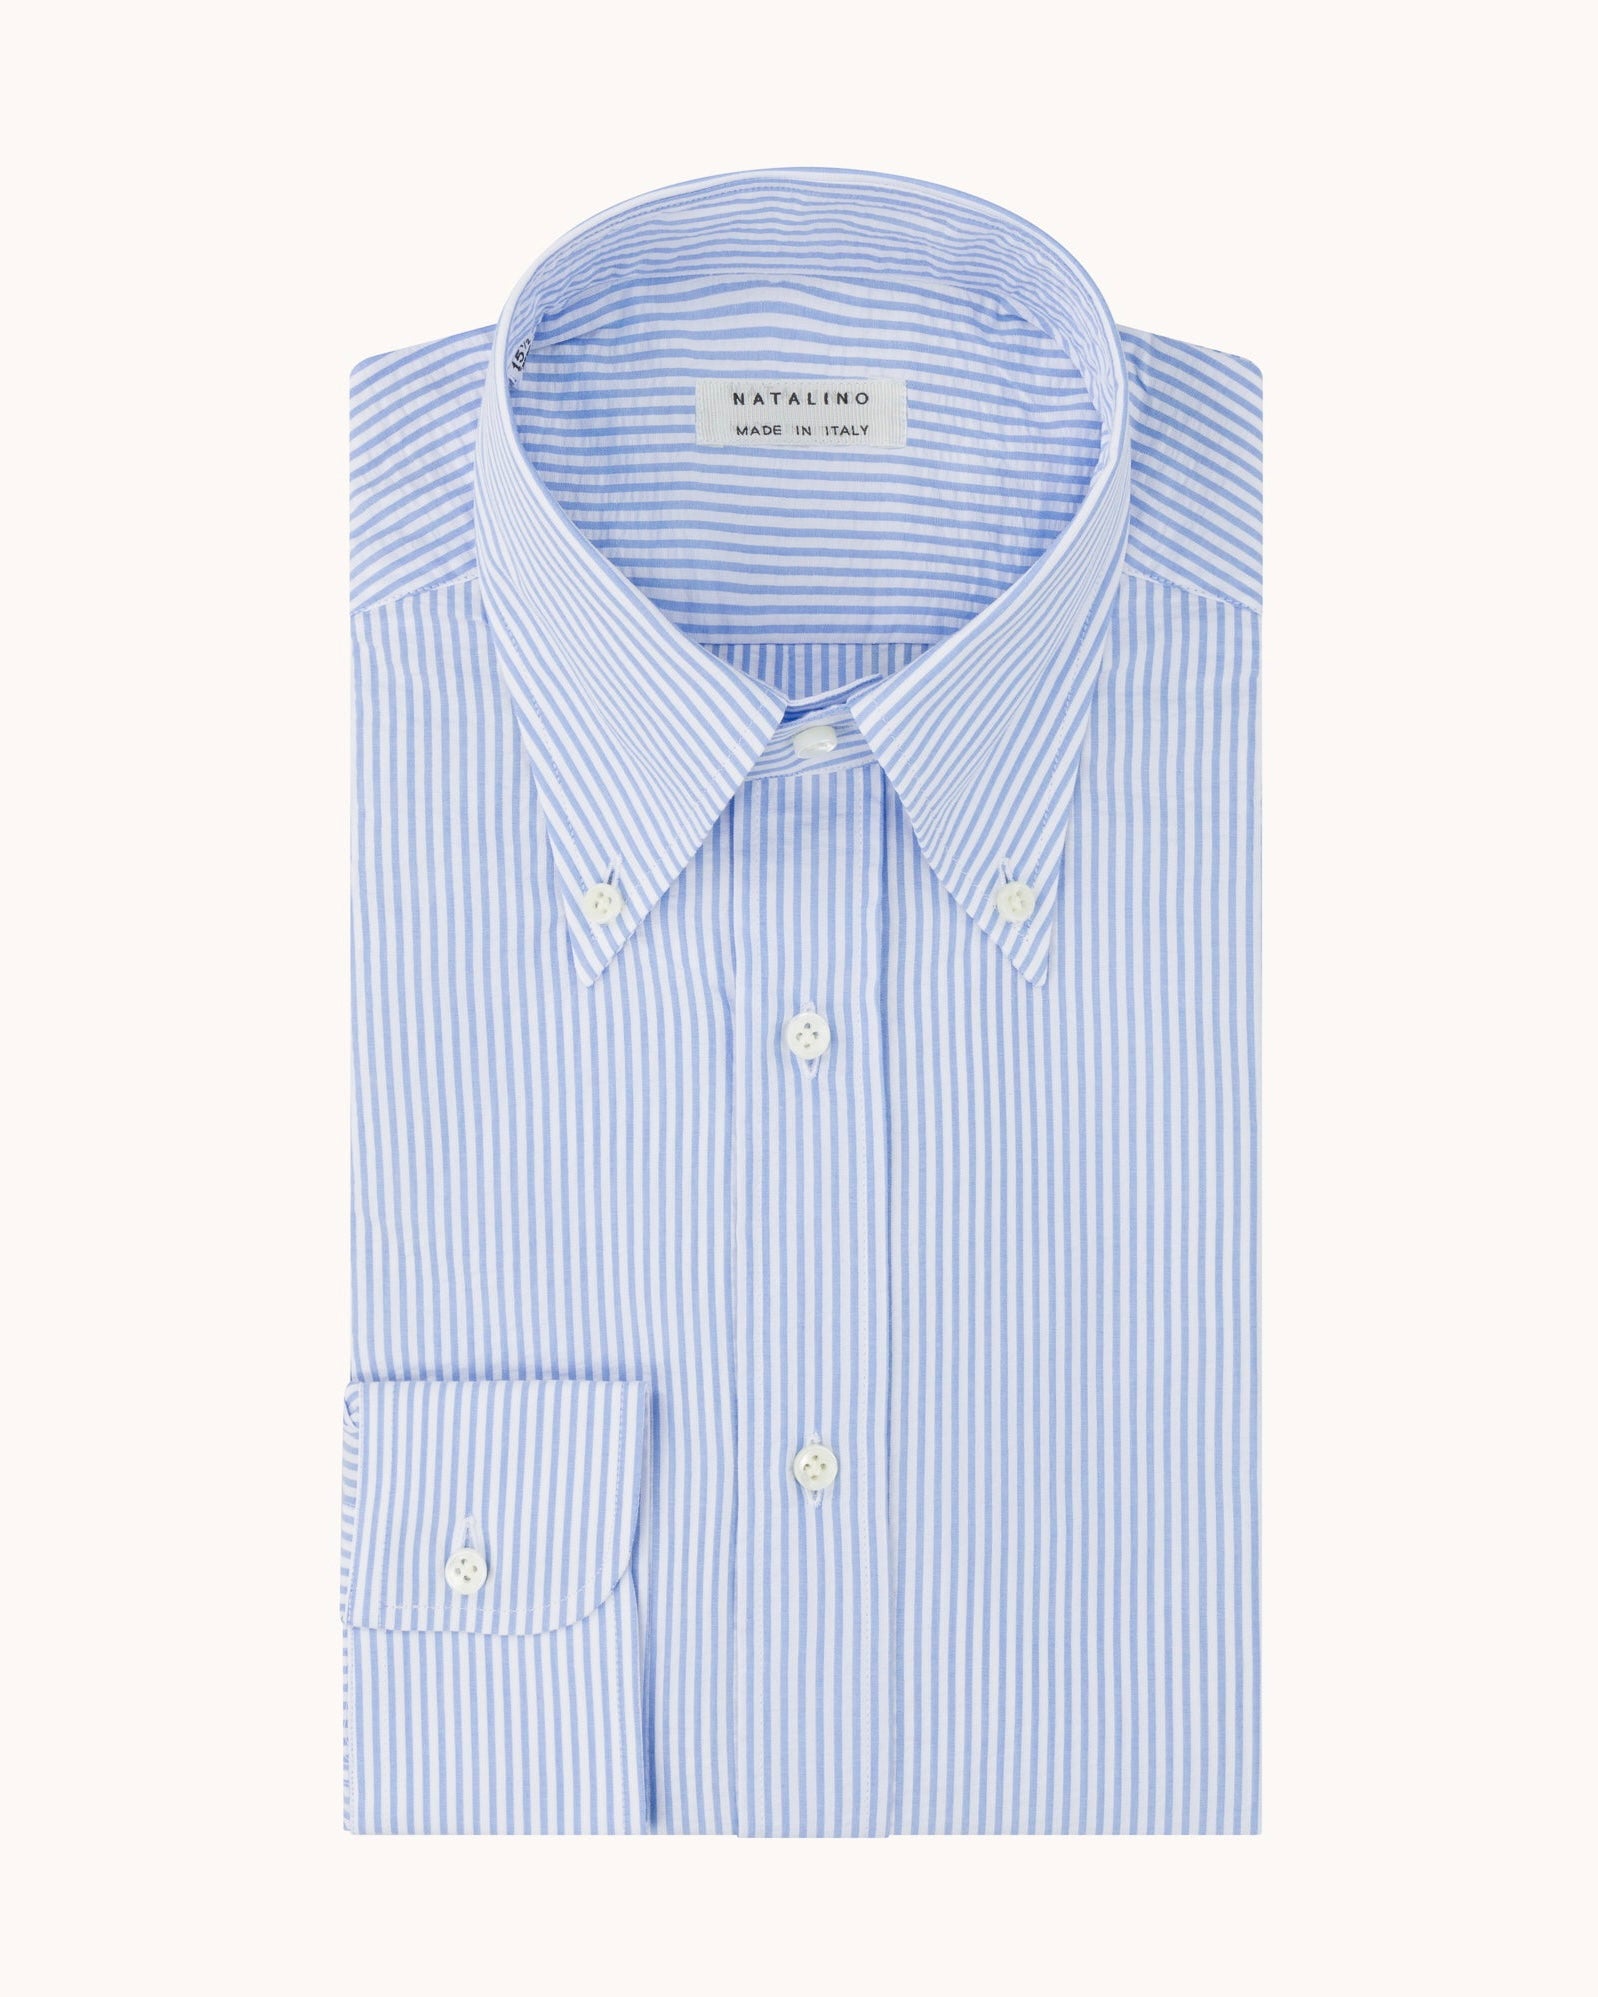 Button Down Collar Shirt - Blue Stripe Cotton Seersucker